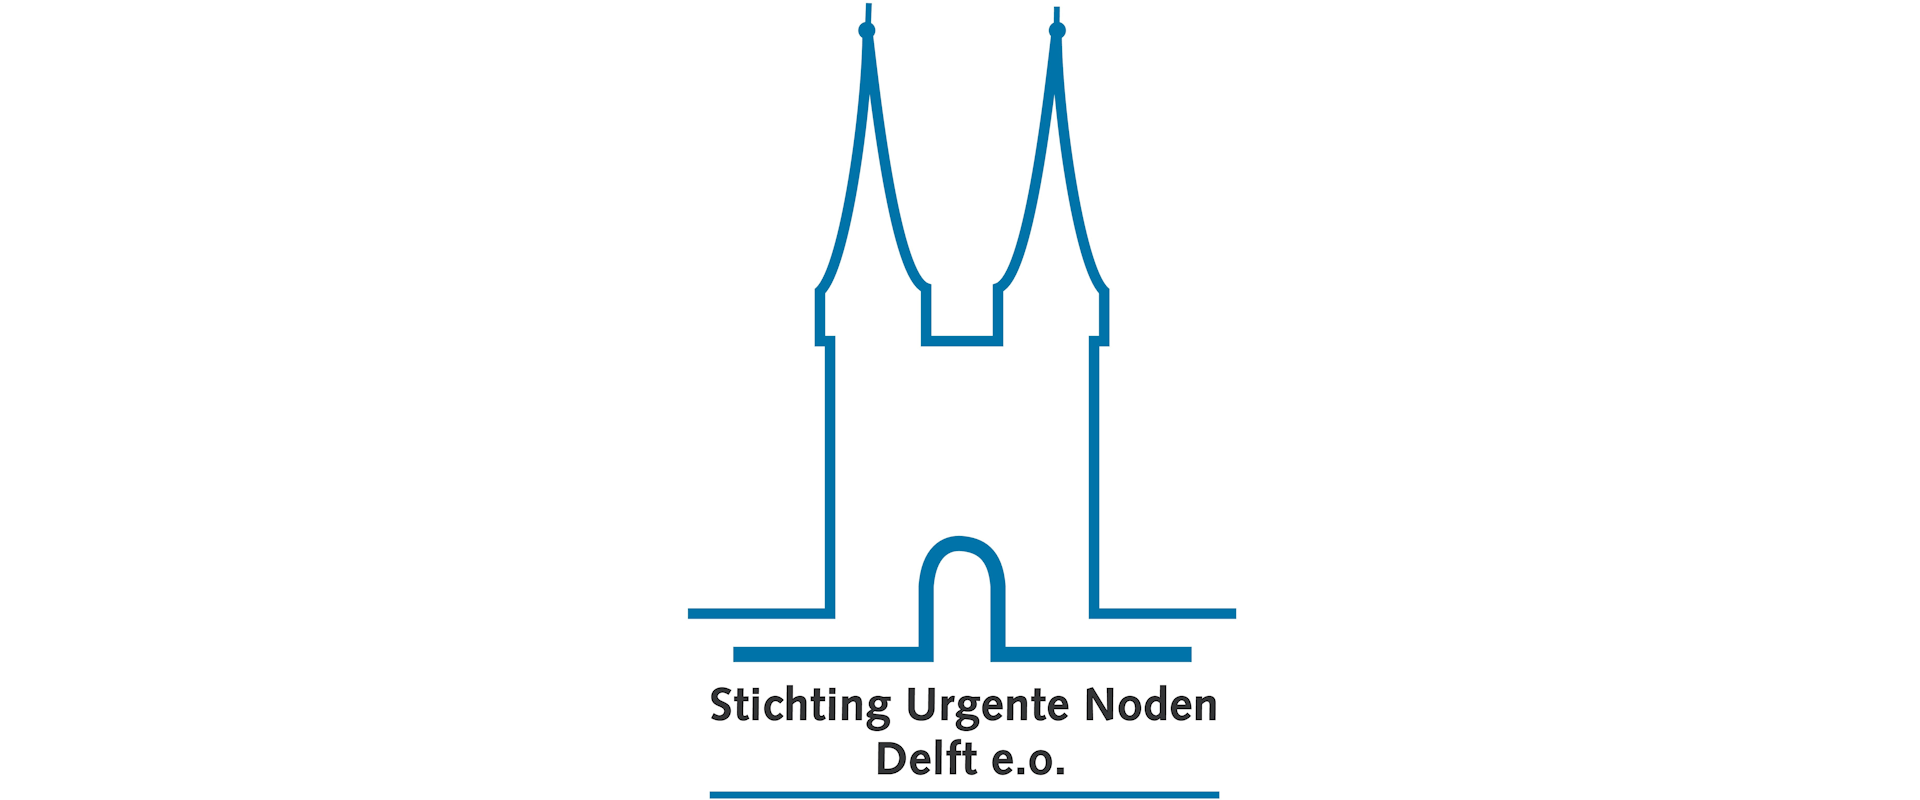 Stichting Urgente Noden